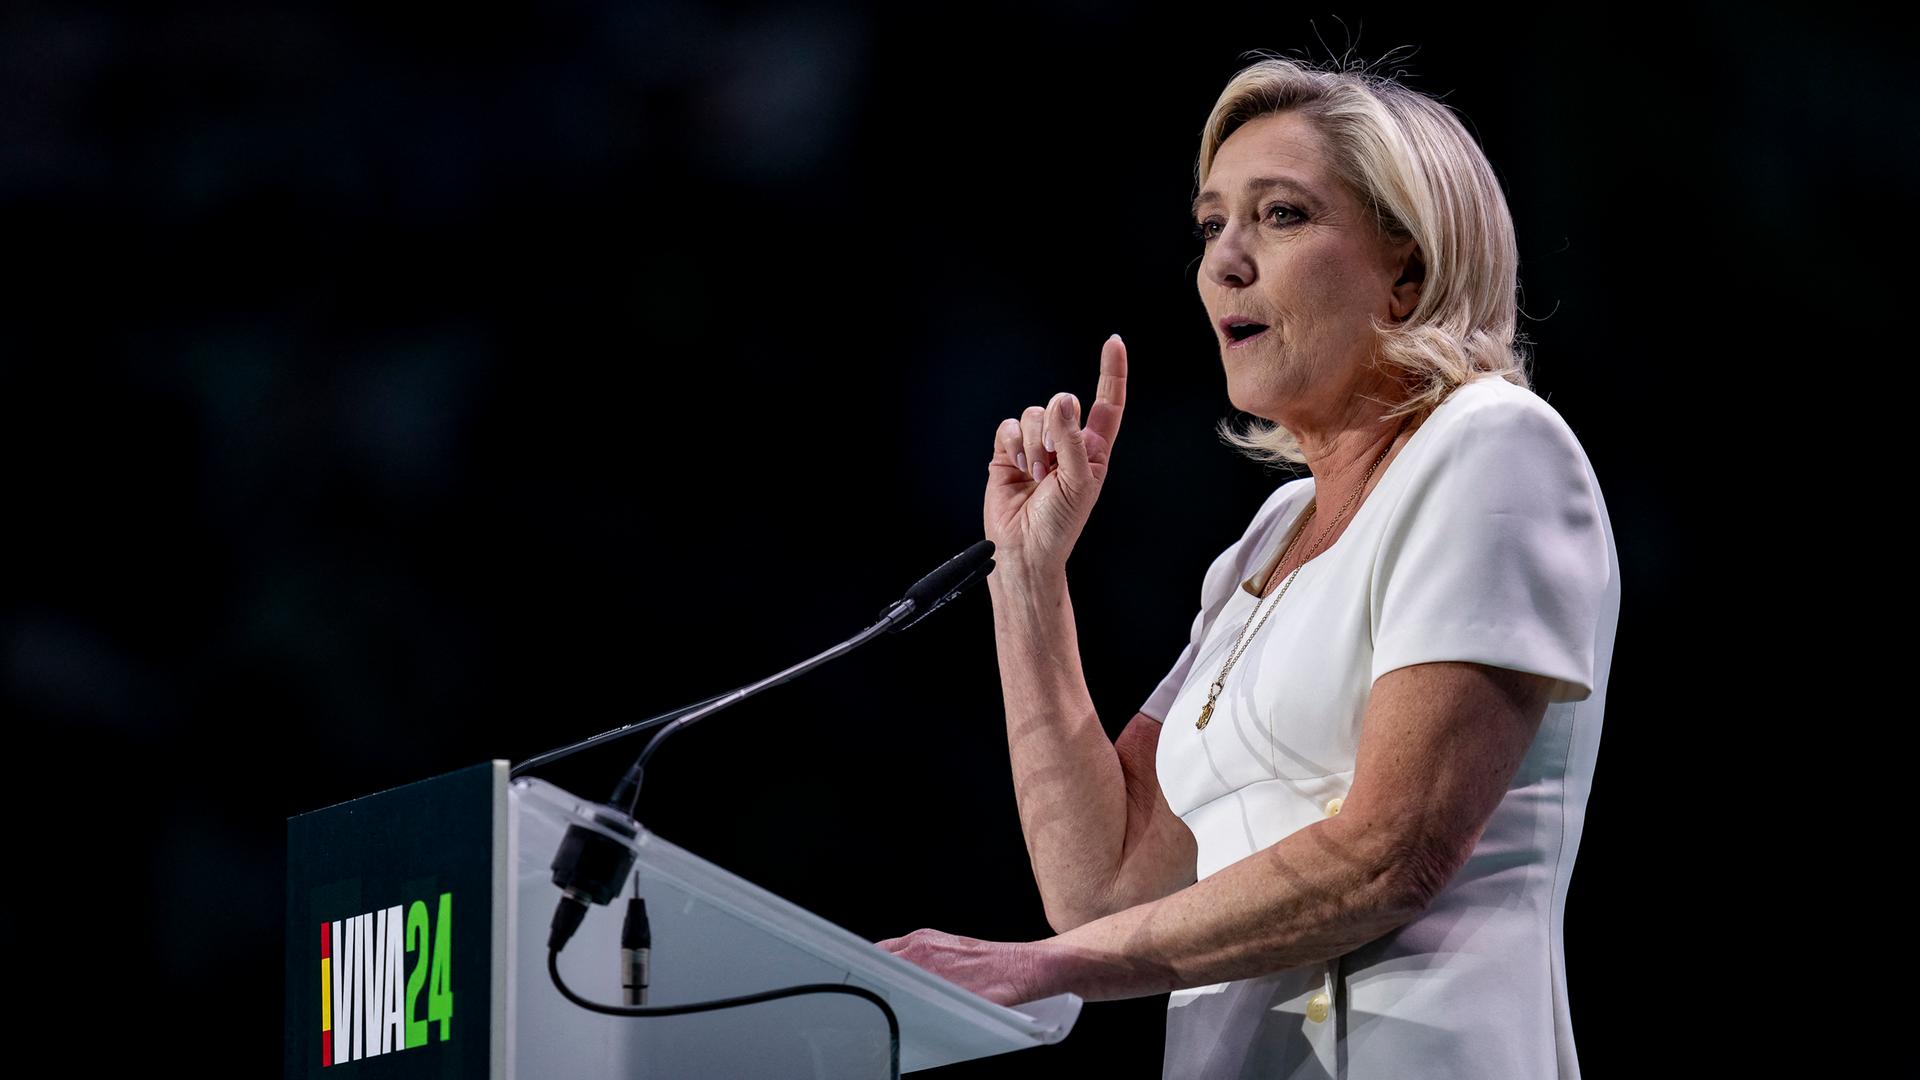 Le Pen im weißen Sommerkleid steht an einerm rednepult, spricht und hebt dabei den rechten Zeigefinger. Der Hintergrund ist dunkel.